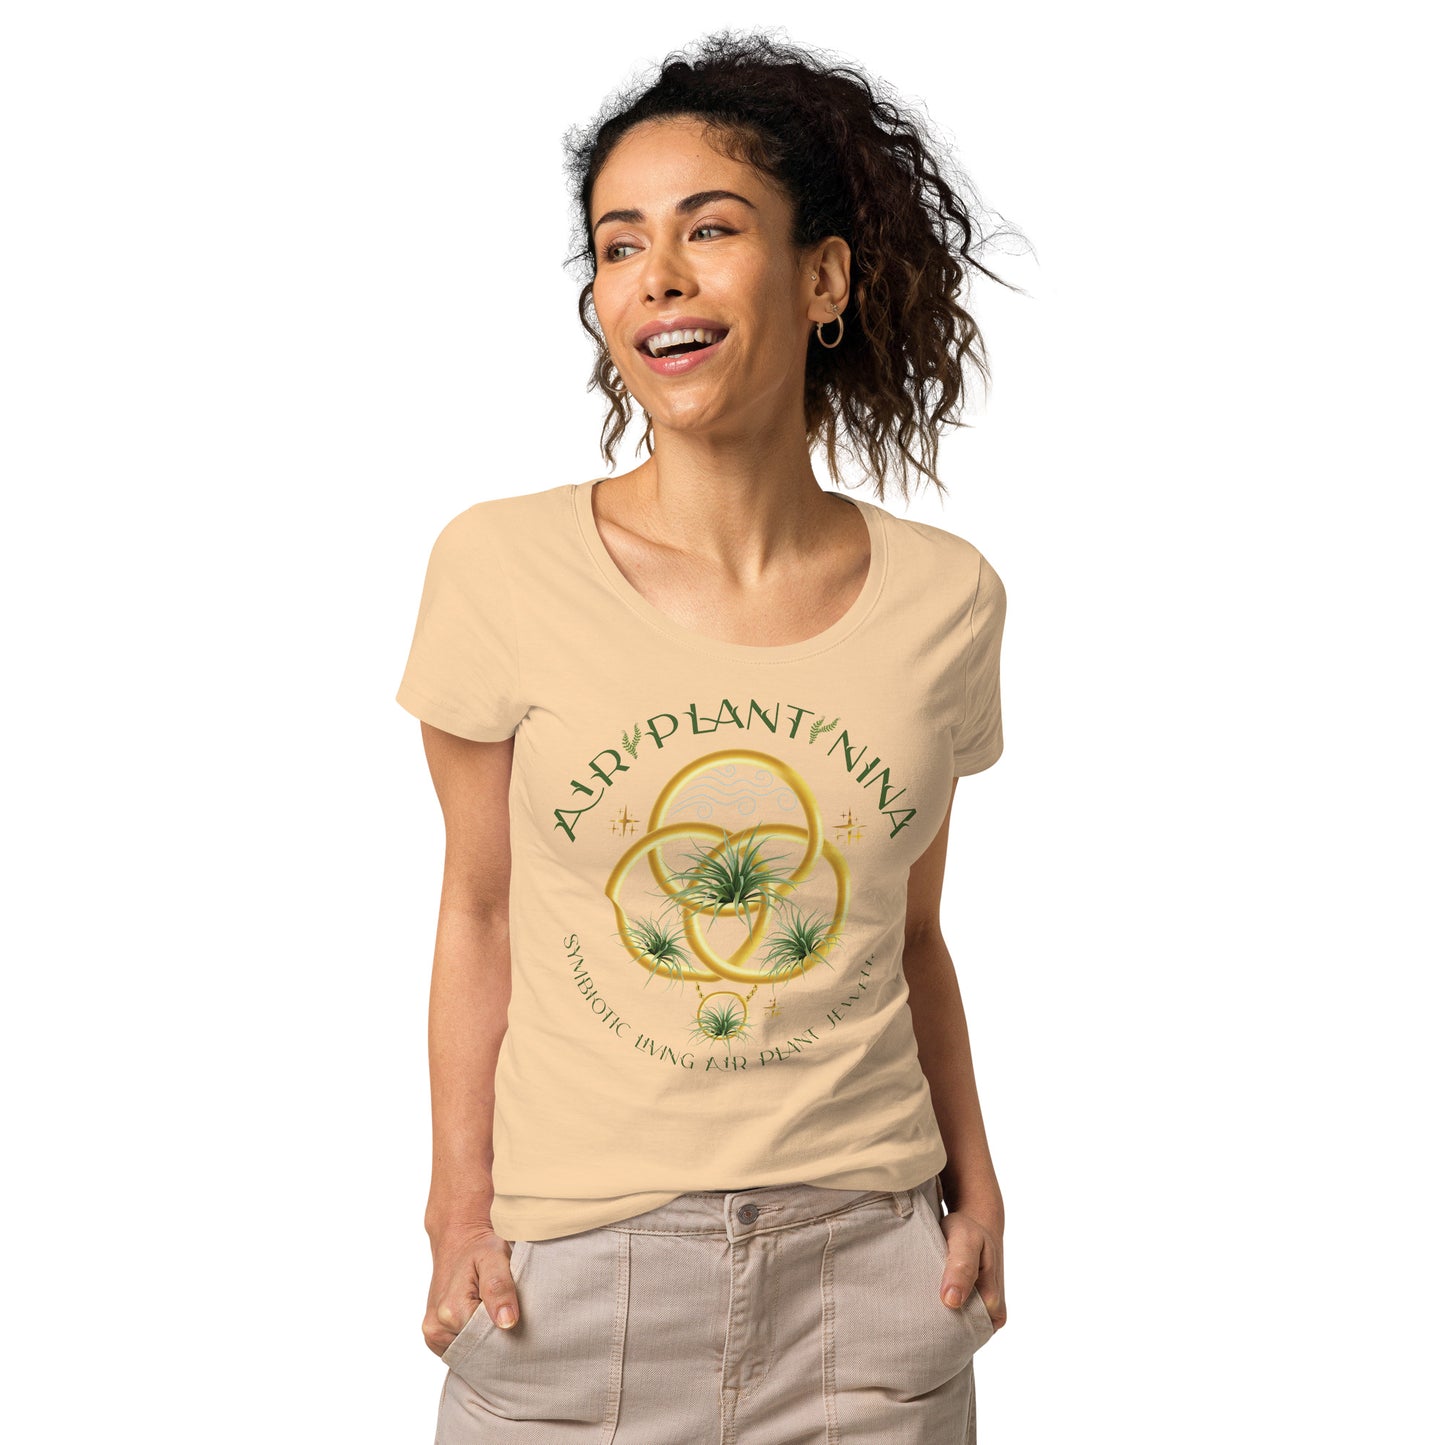 AirPlantNina T-Shirt